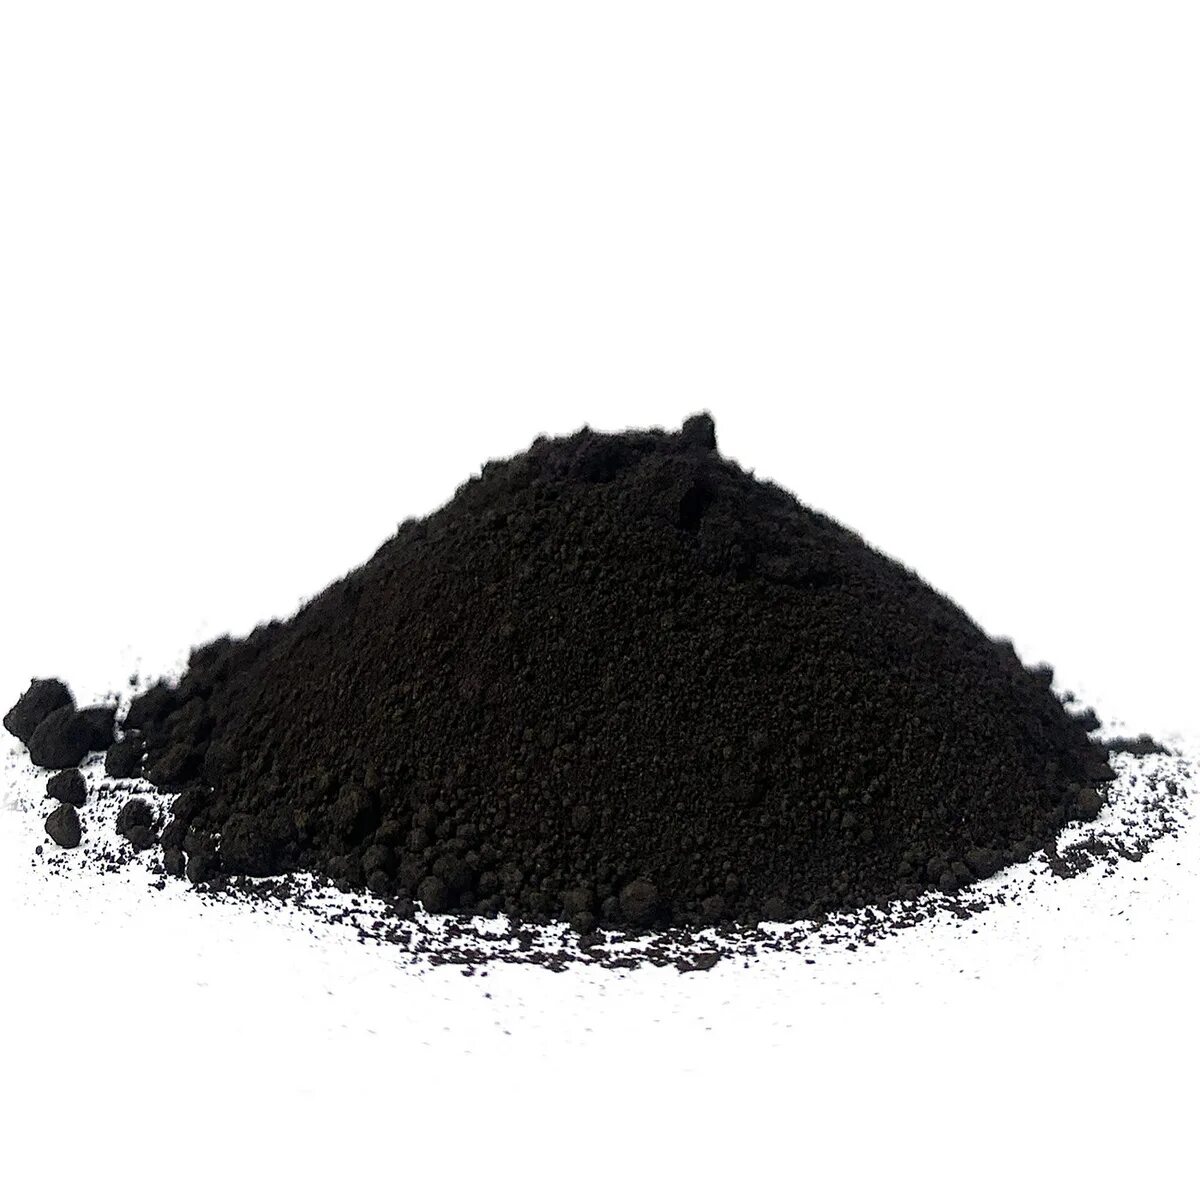 Пигмент Iron Oxide Black 722 черный. Tongchem пигмент. Черный пигмент Tongchem. Пигмент черный КНР 722 25 кг.